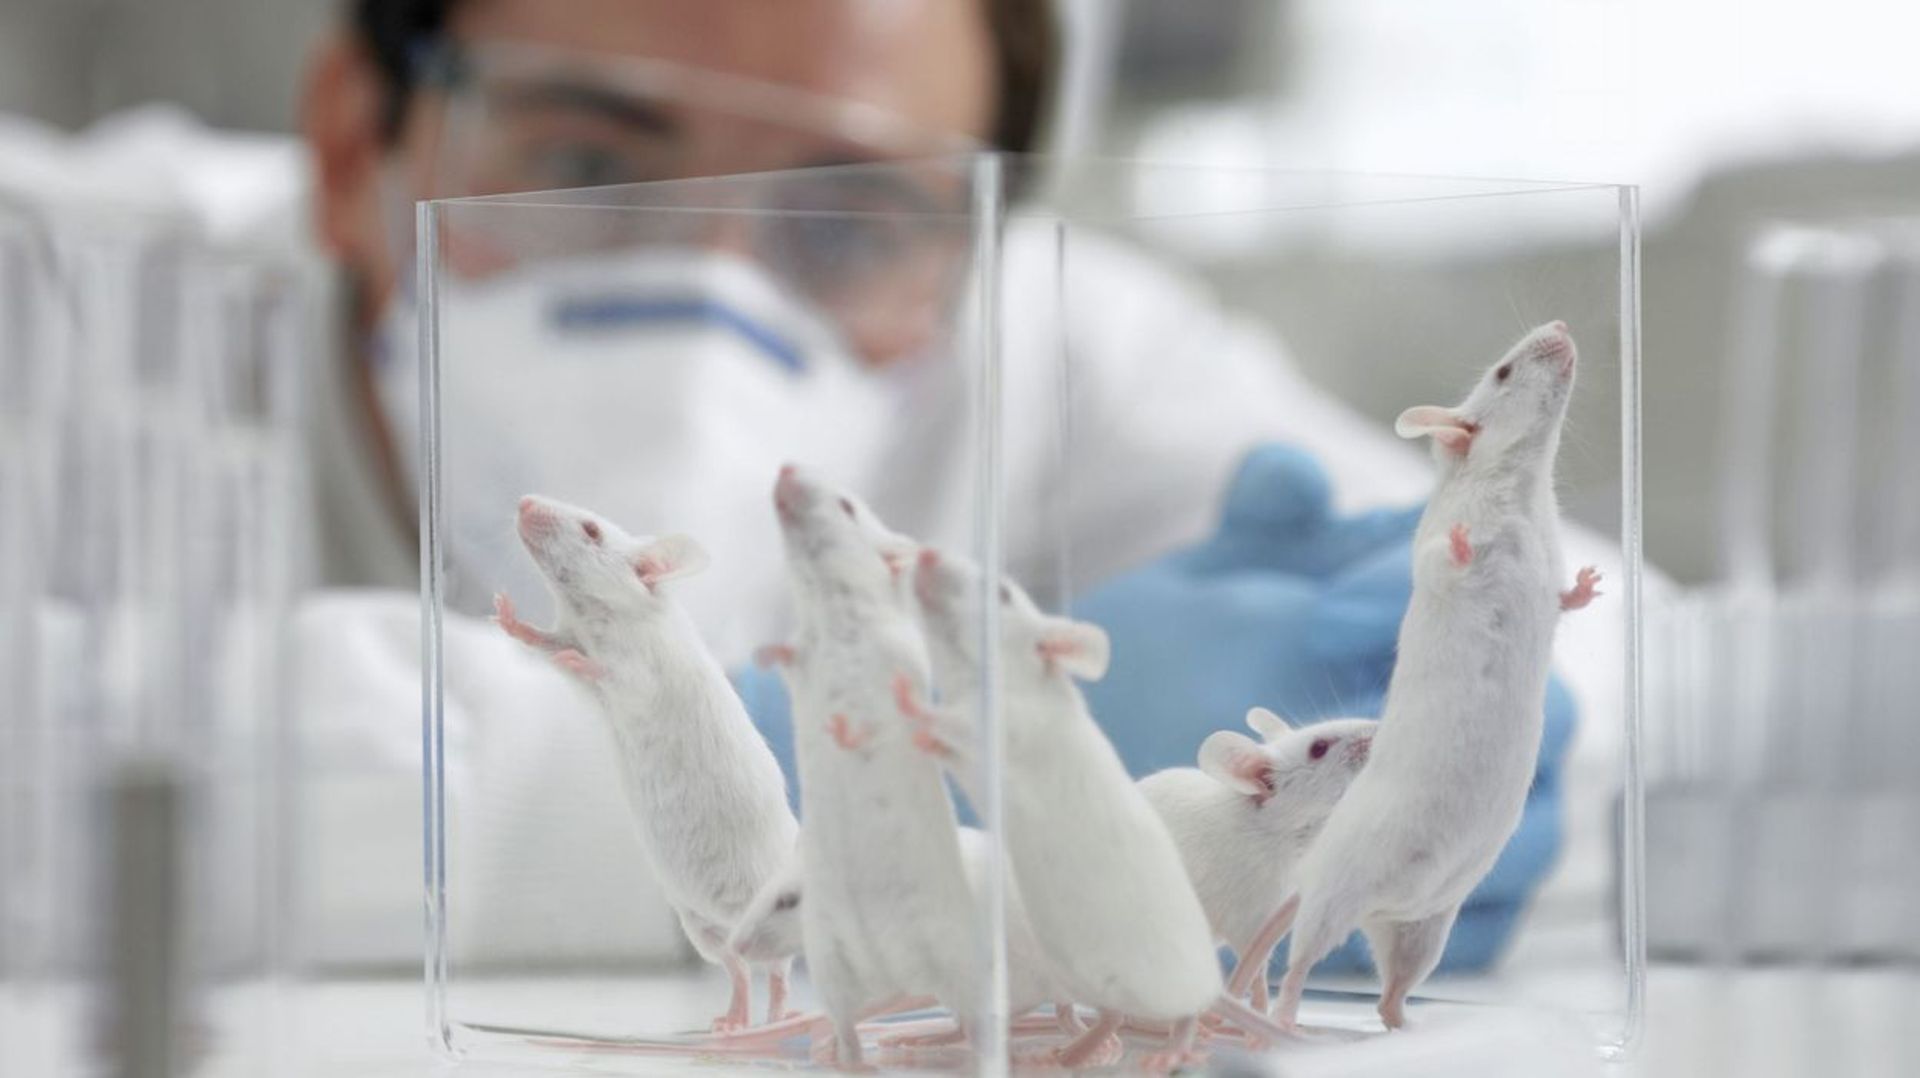 Le gouvernement bruxellois vise une diminution drastique du nombre d'animaux utilisés dans le cadre d'expériences scientifiques.